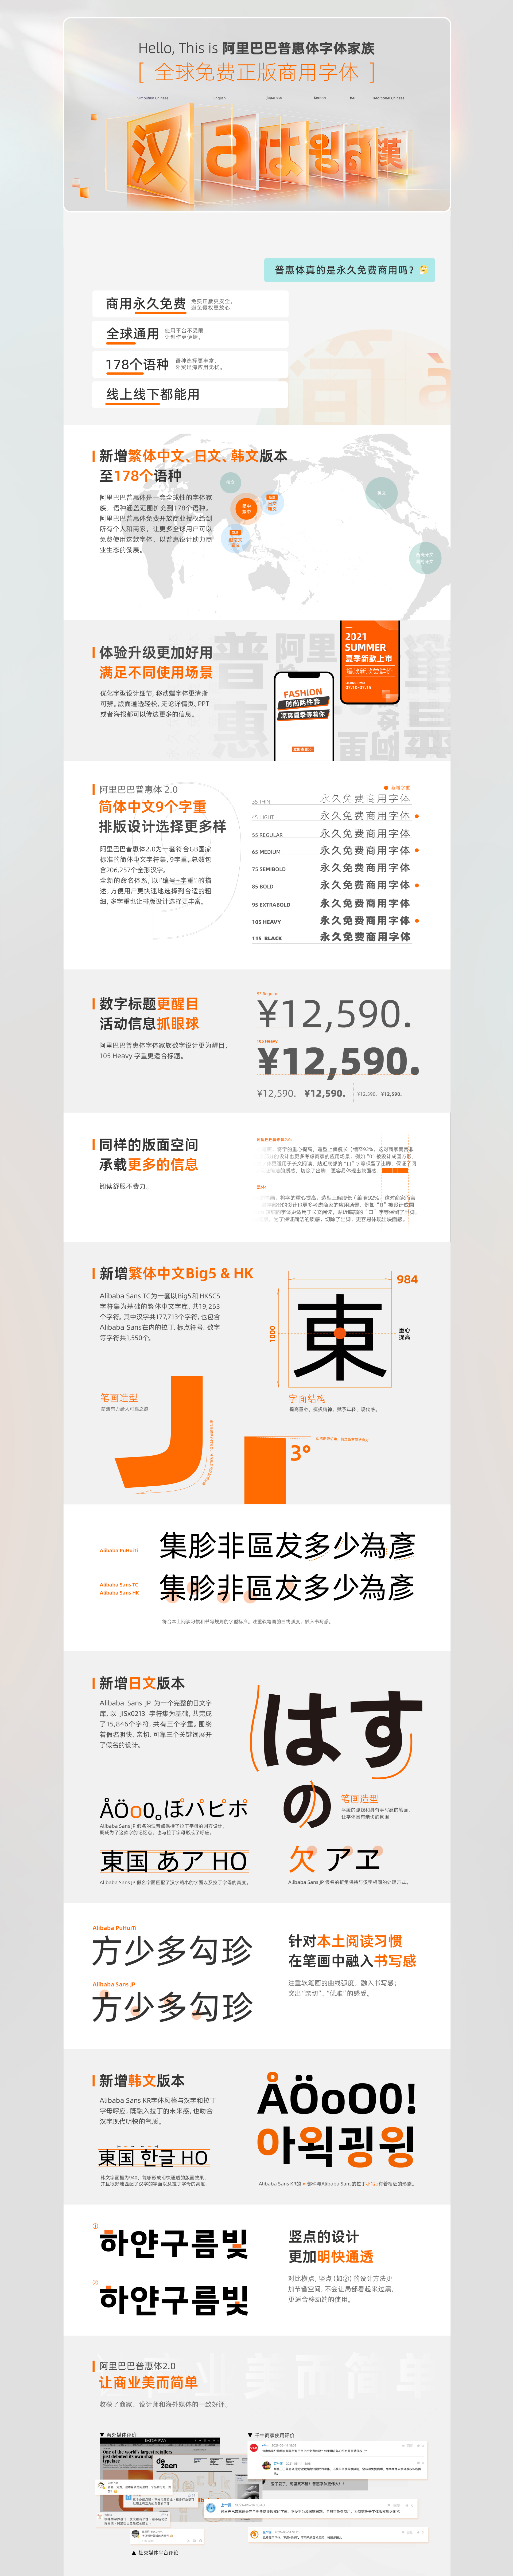 免费商用字体阿里巴巴普惠体新增繁体中文、日文、韩文、越南文等